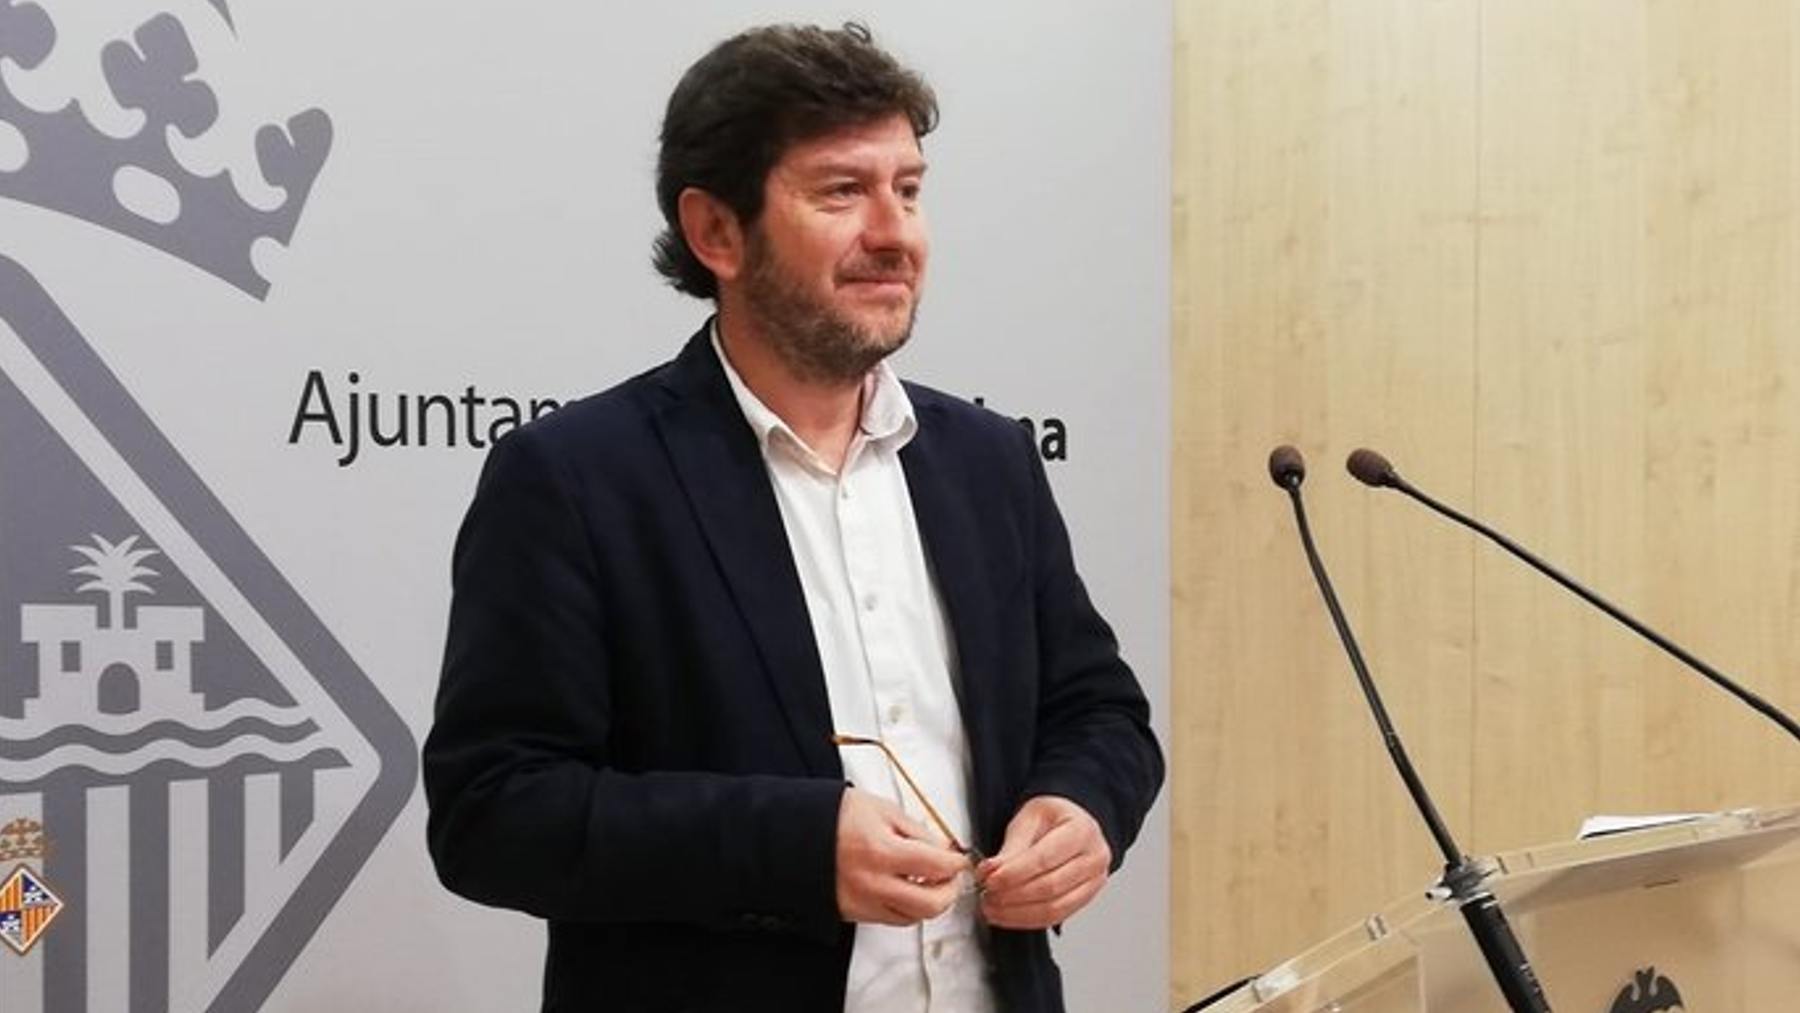 El portavoz del Ayuntamiento de Palma, Alberto Jarabo (Podemos Palma).